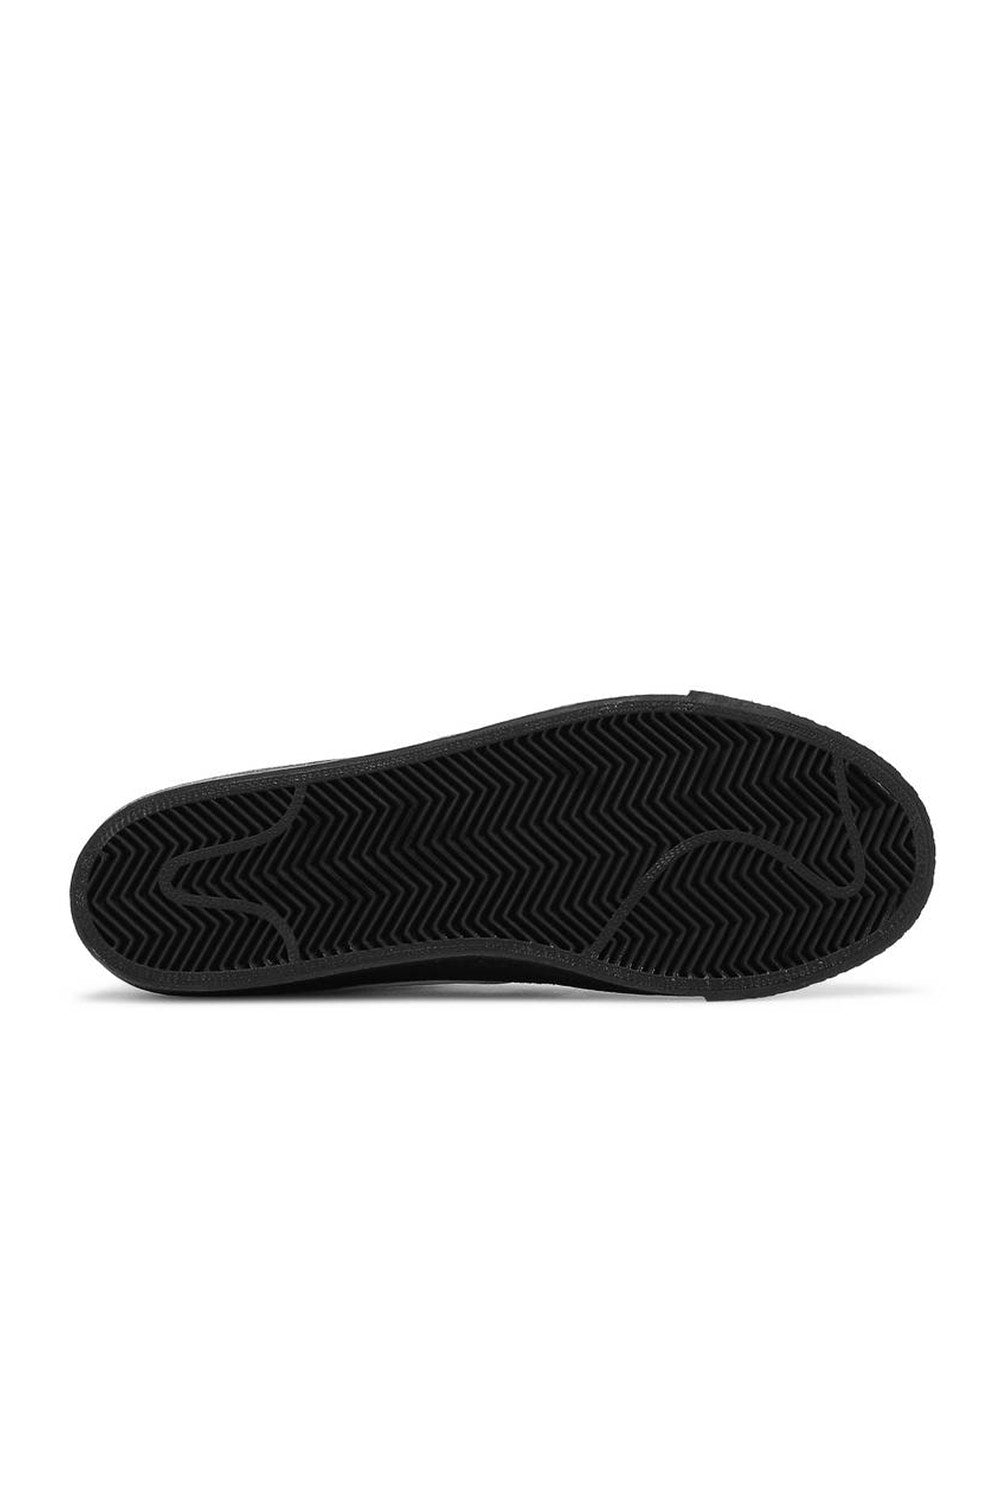 Shop Nike SB | Nike SB Zoom Blazer Mid Shoes